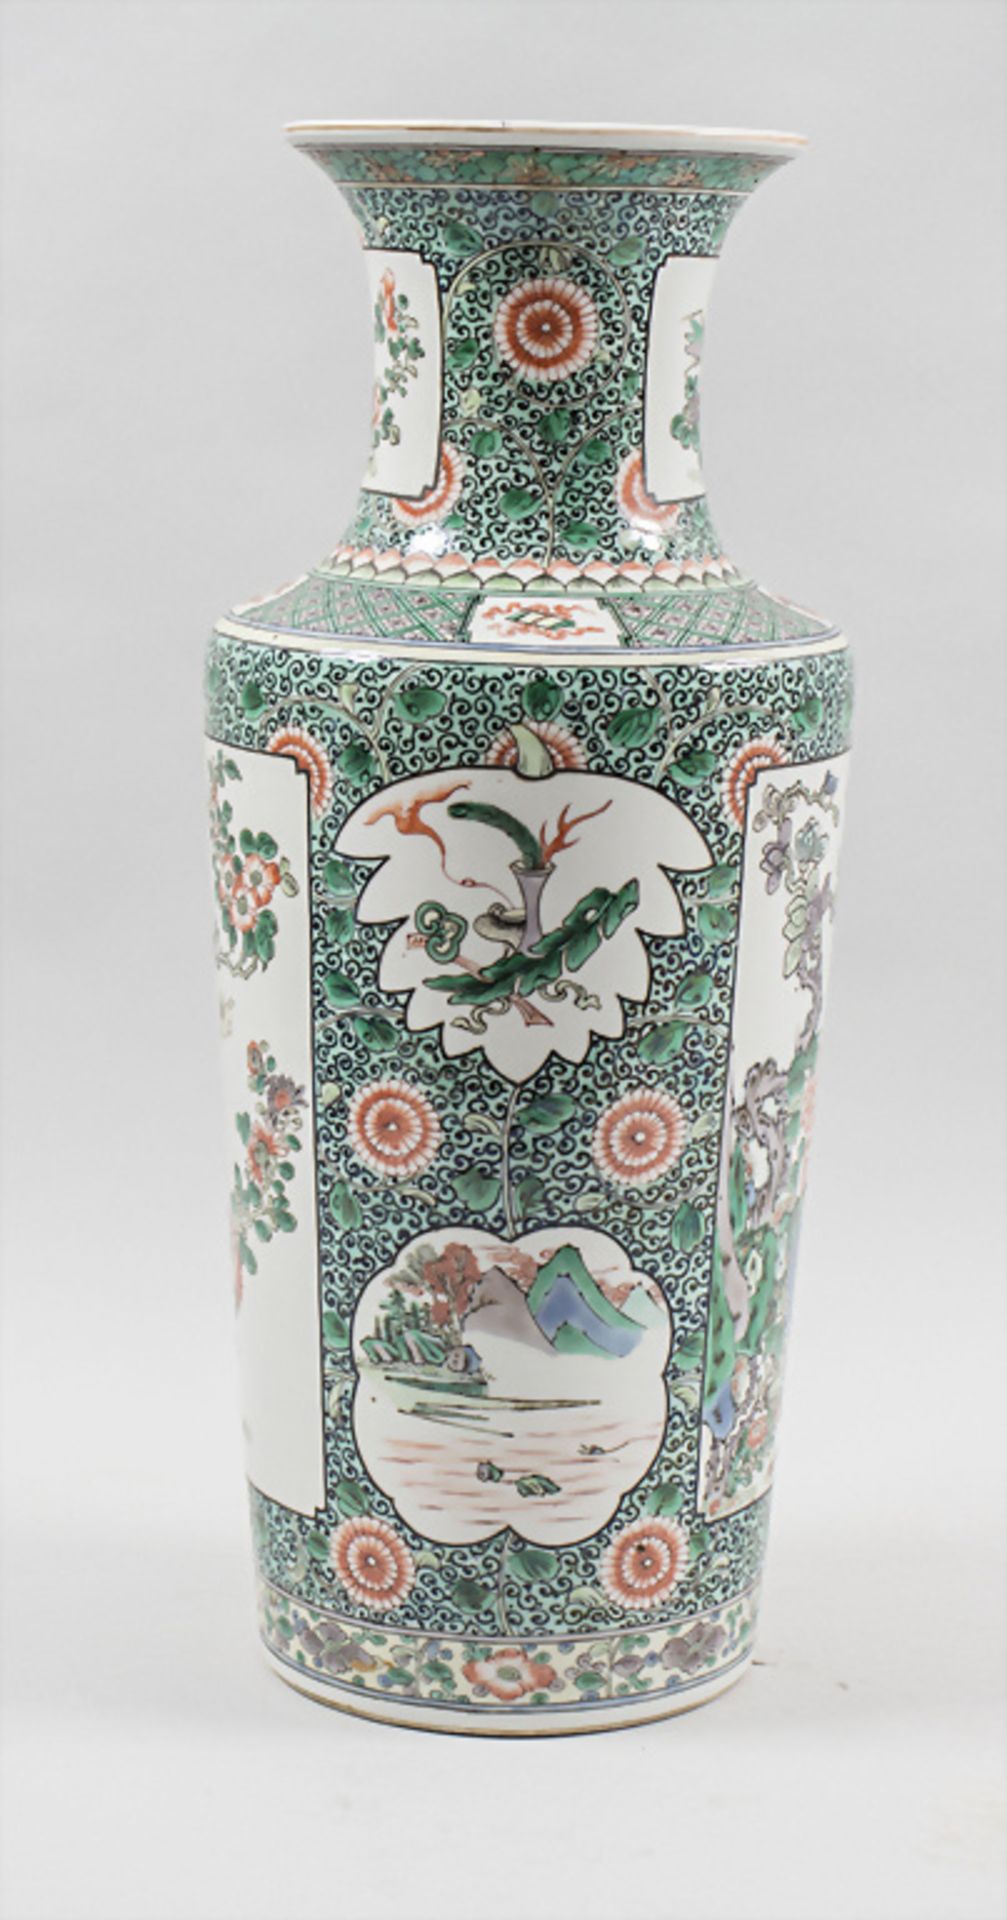 Rouleau-Vase, China, Qing Dynastie (1644-1911), gemarkt Kangxi (1662-1722) - Bild 2 aus 8